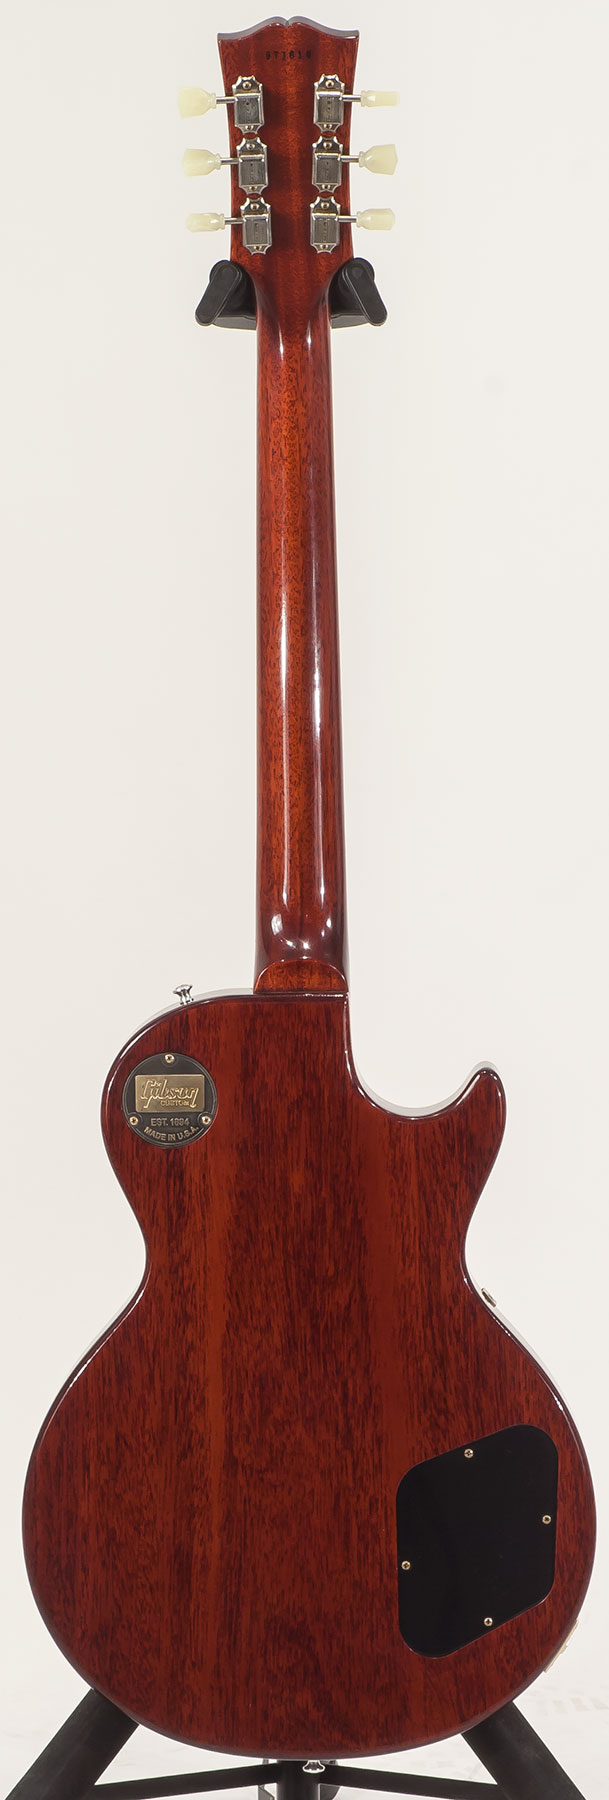 Gibson Custom Shop M2m Les Paul Standard 1959 Lh Gaucher Ltd 2h Ht Rw #971610 - Vos Washed Cherry - Guitare Électrique Gaucher - Variation 1